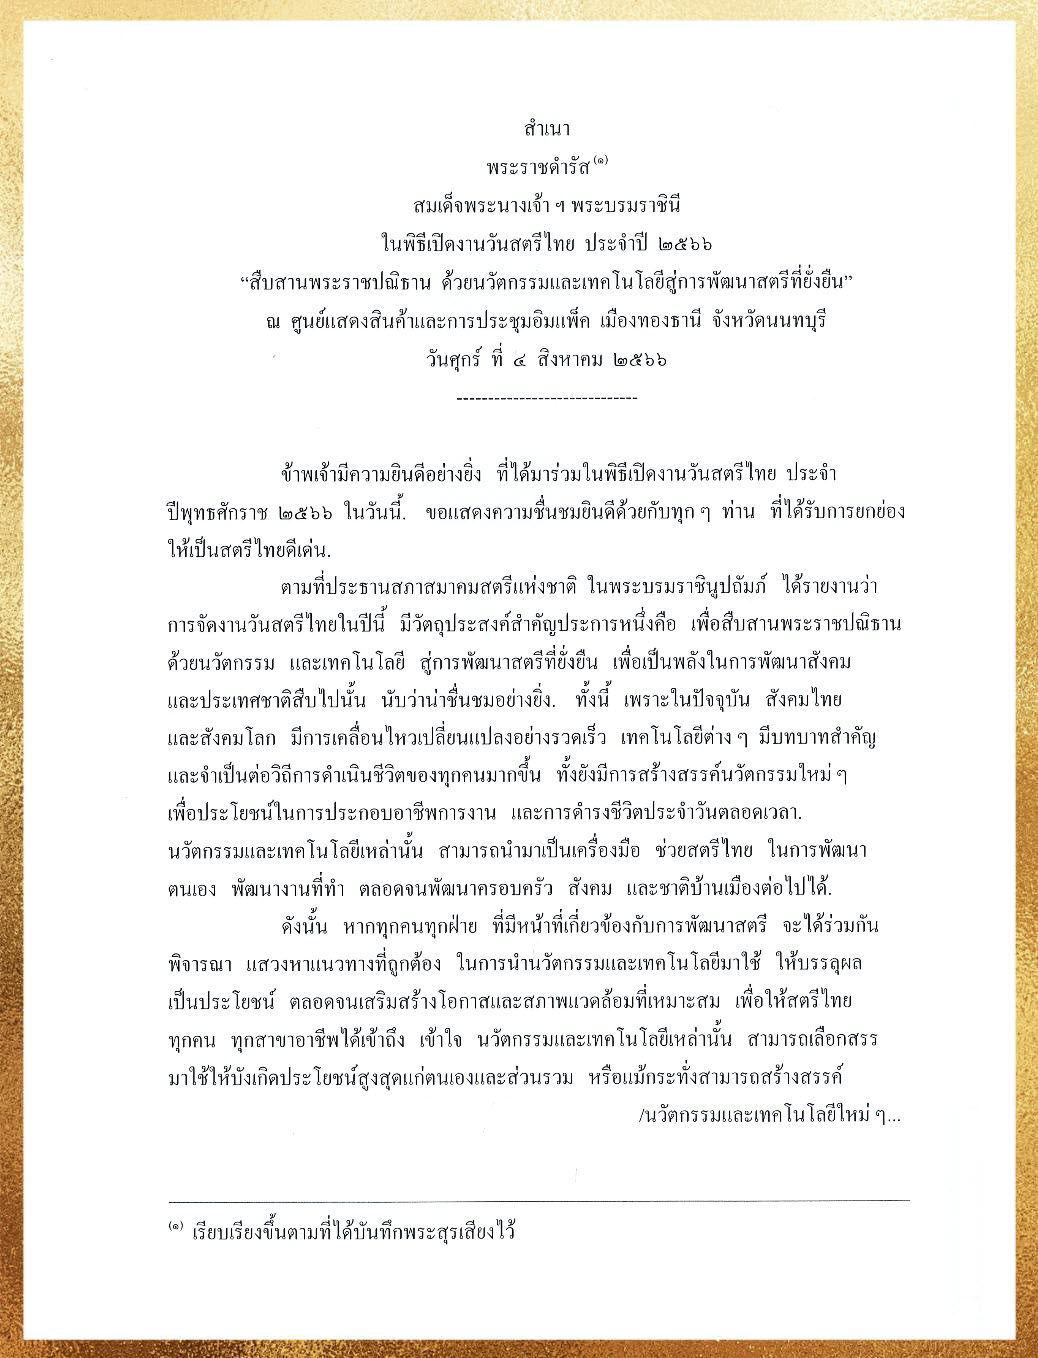 พระราชดำรัส วันสตรีไทย 2566 สมเด็จพระนางเจ้า ฯ พระบรมราชินี